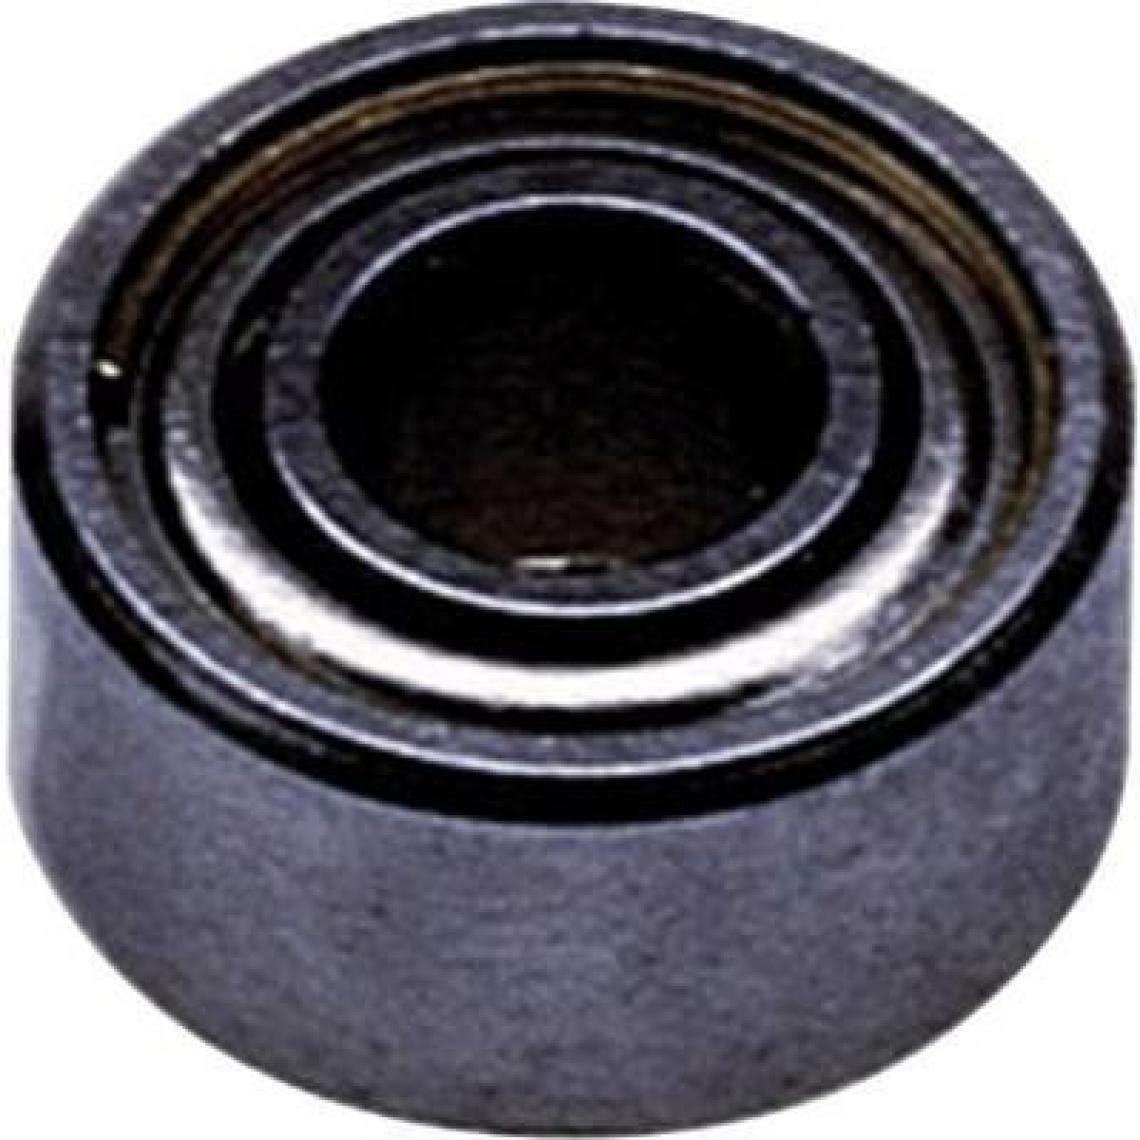 Inconnu - Reely Roulement Radial acier inoxydable en extérieur Diamètreâ€¯: 17 mm intérieur de diamètreâ€¯: 35 mm Vitesse de rotation (Max.)â€¯: 14000 tr/min - Accessoires et pièces